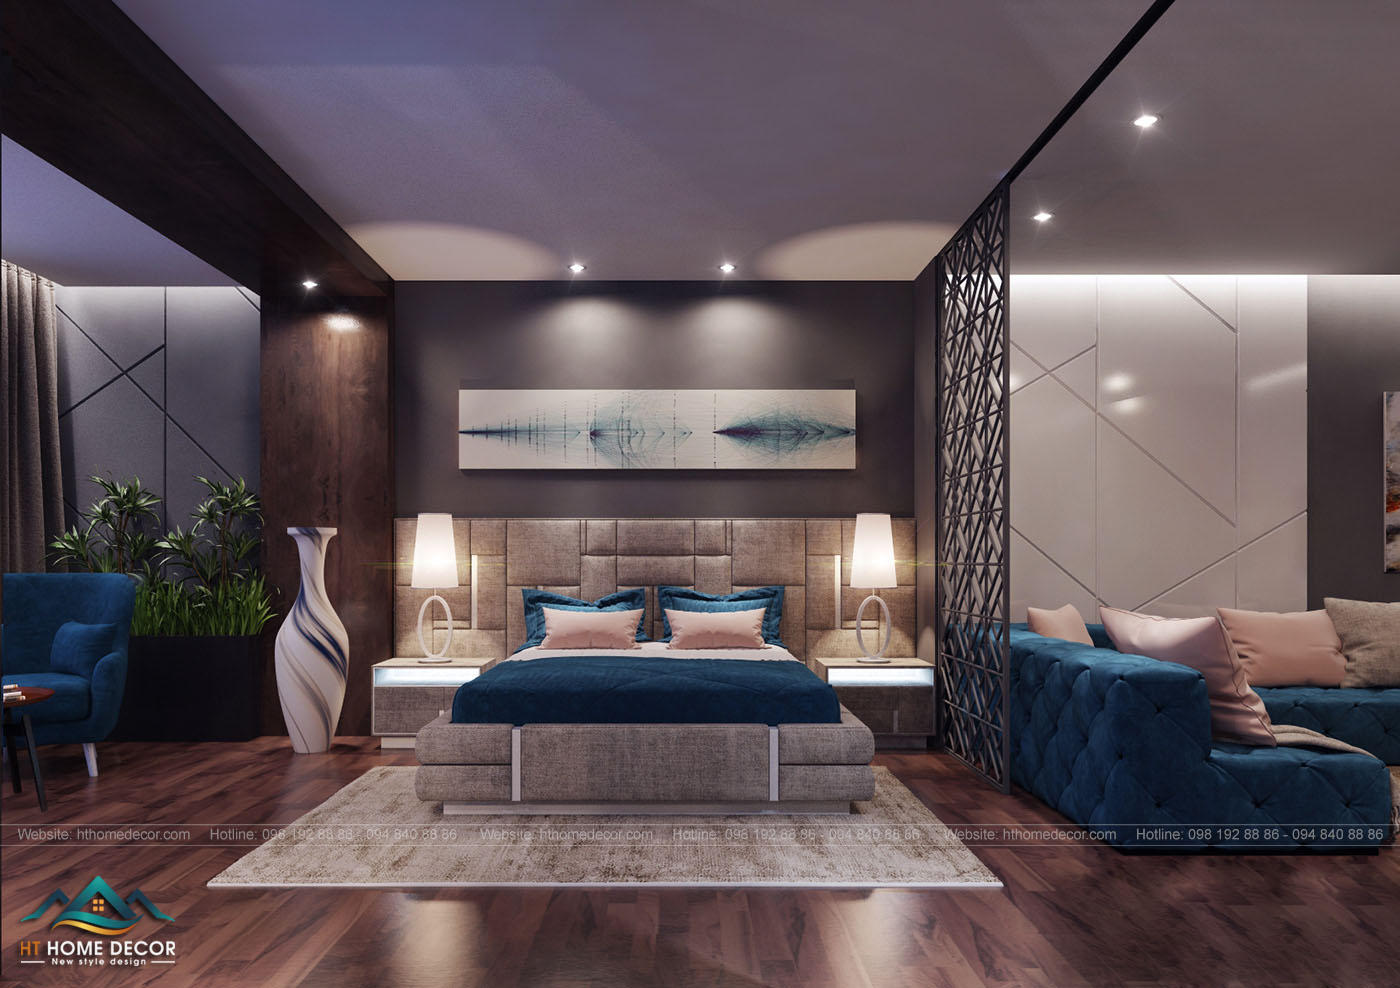 Sàn gỗ tối màu hòa lẫn với màu sắc gian phòng,tạo nên được sự sang chảnh,độc đáo cho khách hàng. Và sự khác biệt với khách sạn khác.